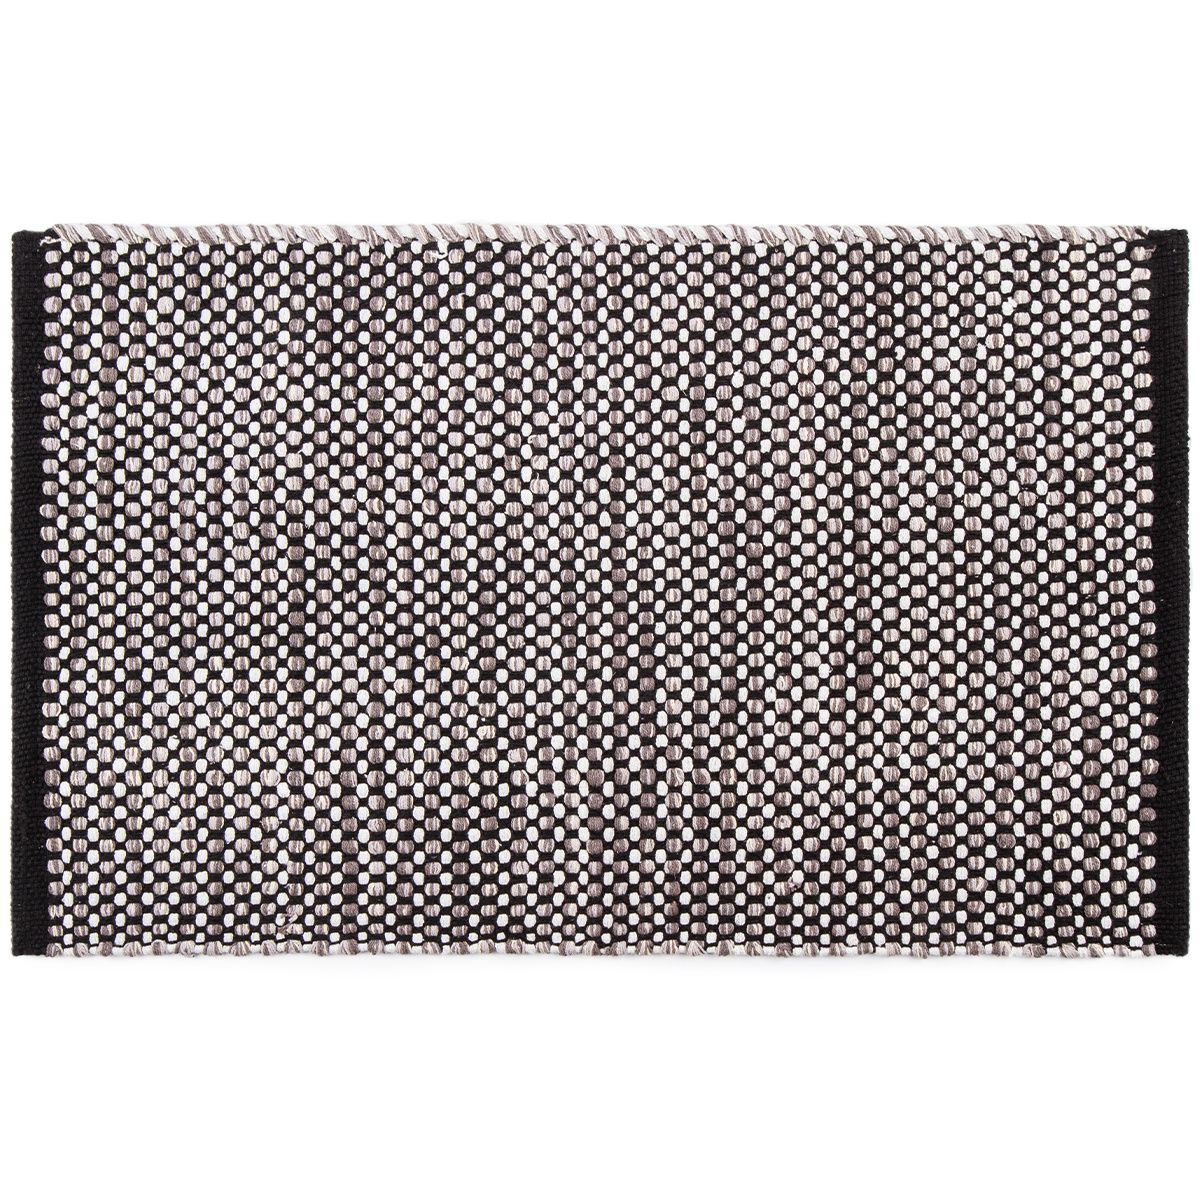 BO-MA Trading Kusový bavlněný koberec Elsa šedá, 60 x 110 cm - 4home.cz